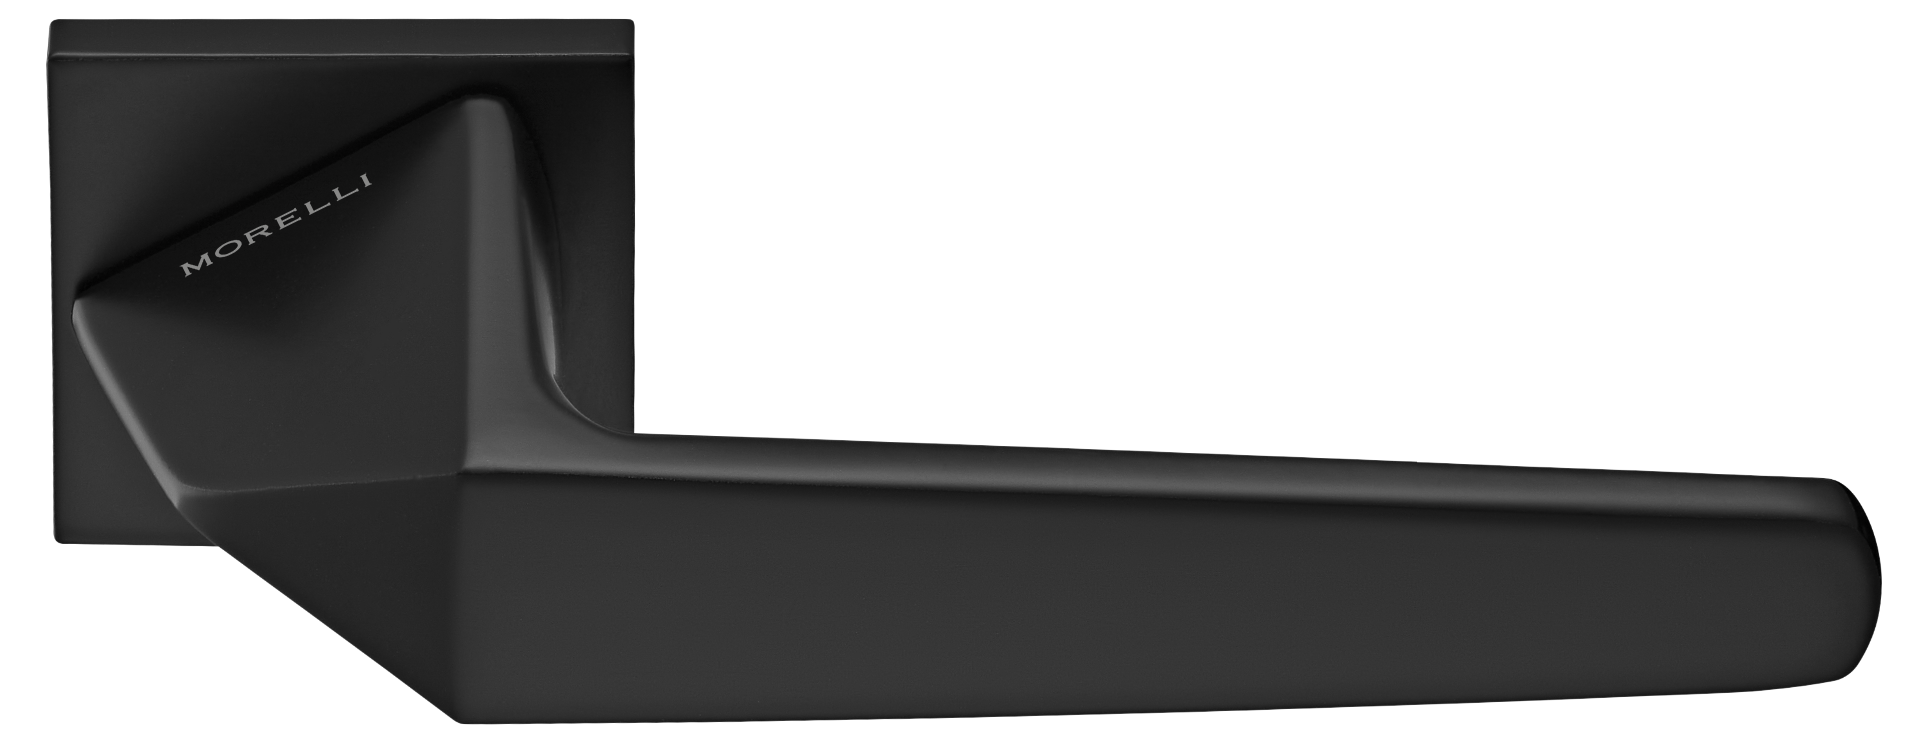 SOUK ручка дверная на квадратной розетке 6 мм, MH-55-S6 BL, цвет - черный фото купить Актау